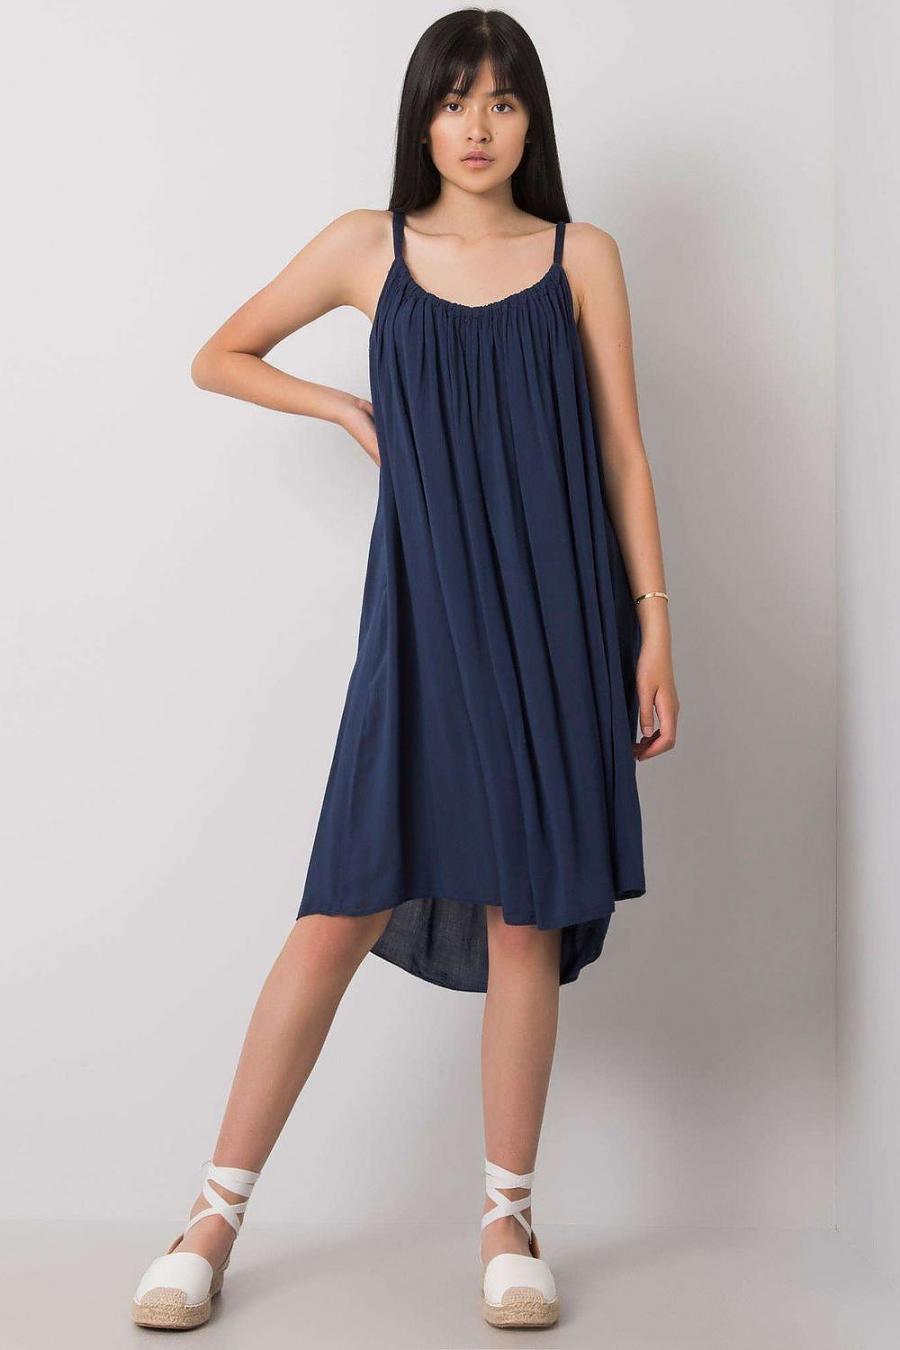 Ostatní značky šaty dámské 165898 - Tmavě modrá - velikost M